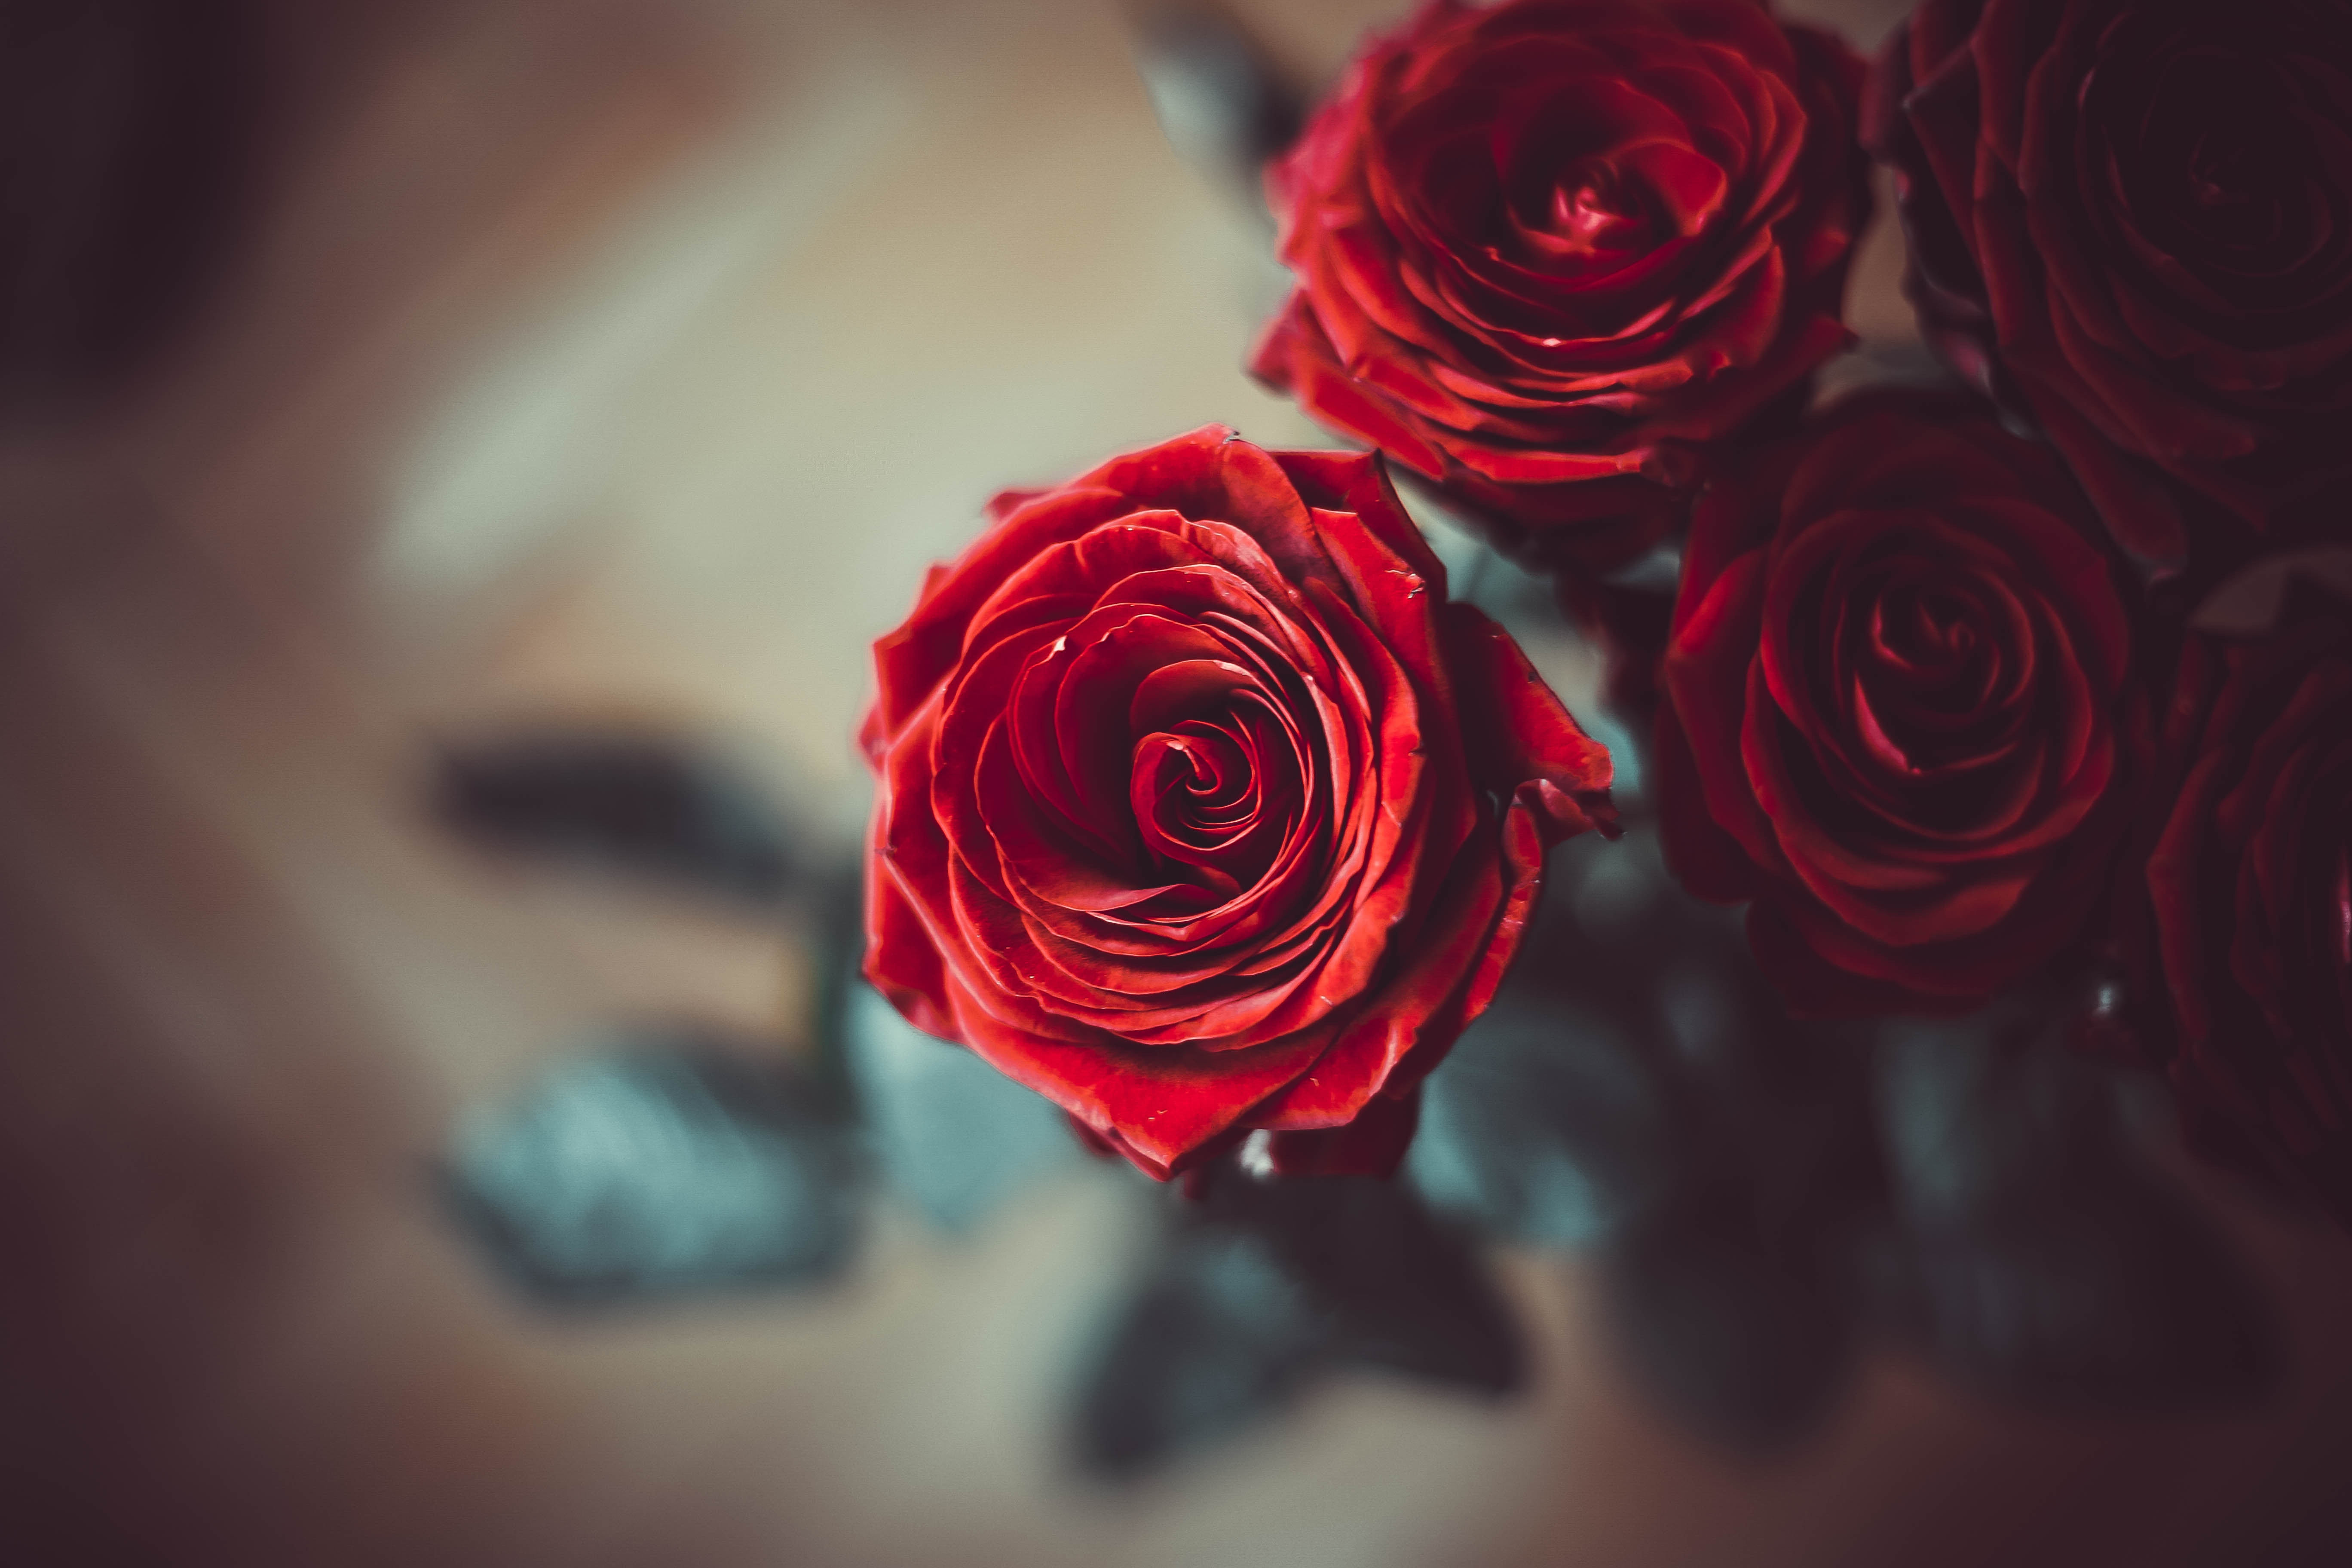 rose, flowers, red, flower, rose flower, petals, bud, blur, smooth Image for desktop